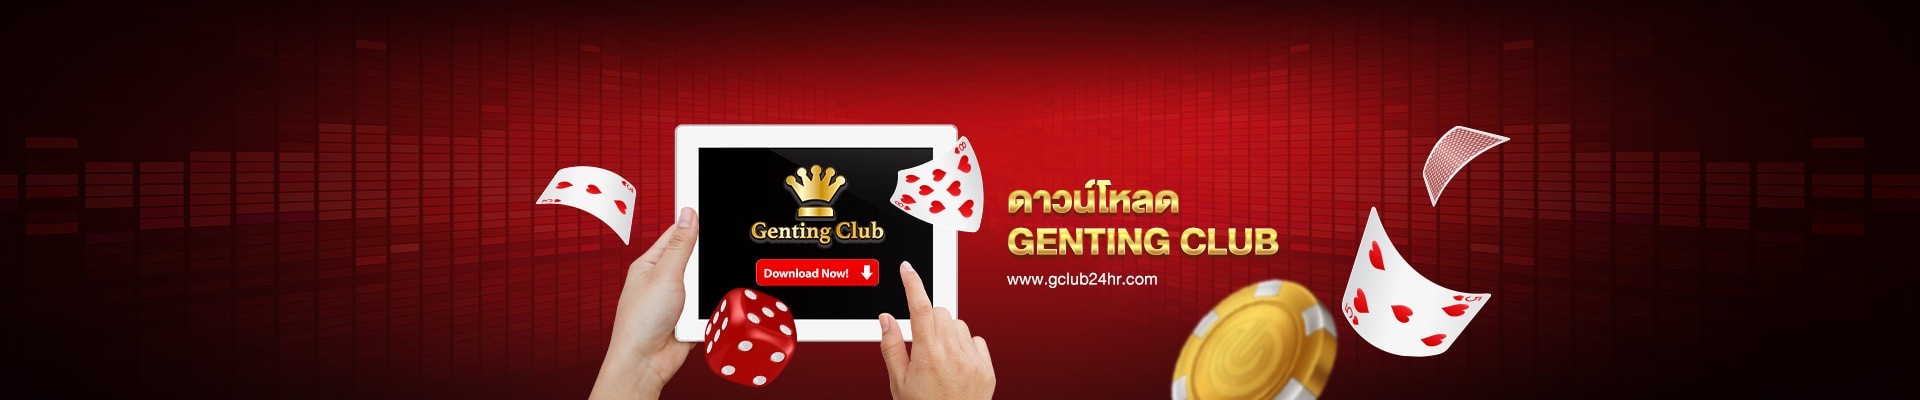 gclub24hr_casino_online_genting_download